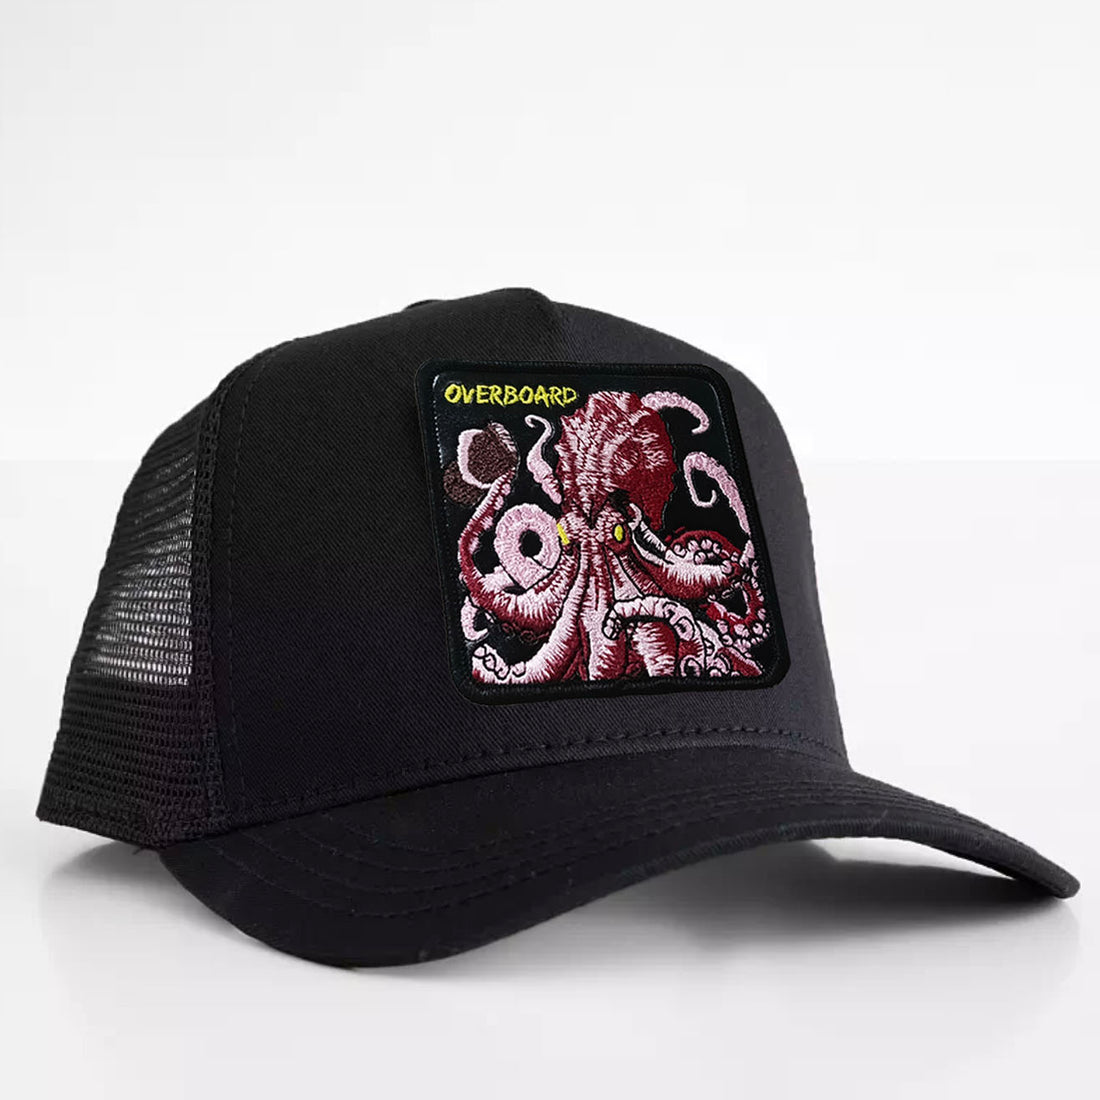 Kraken - "Overboard" Trucker Hat